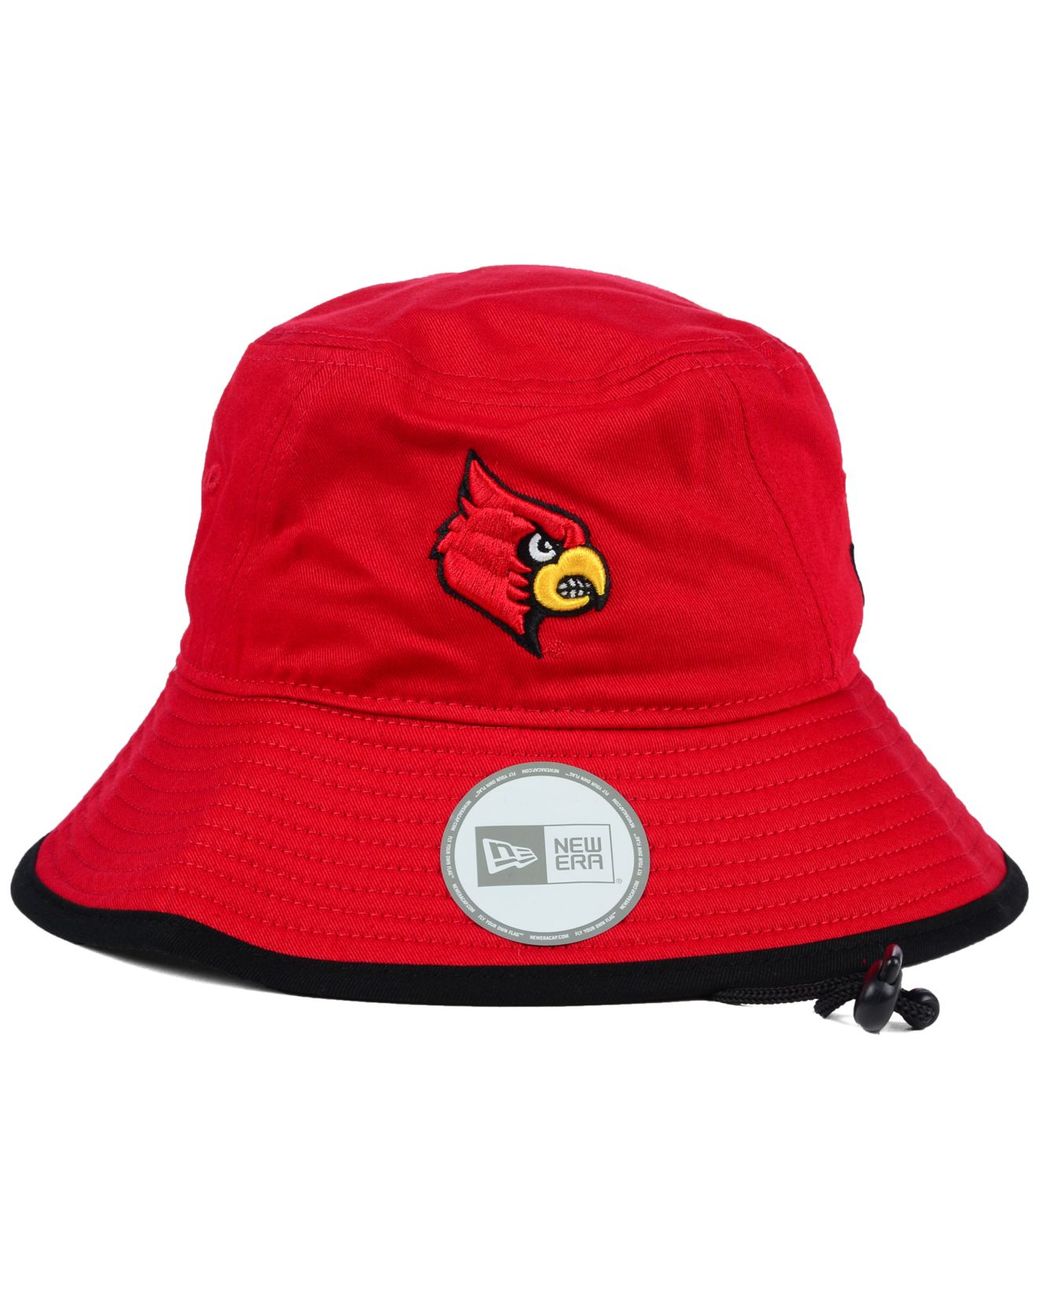 New Era Red Louisville Cardinals Campus Preferred 39THIRTY Flex Hat